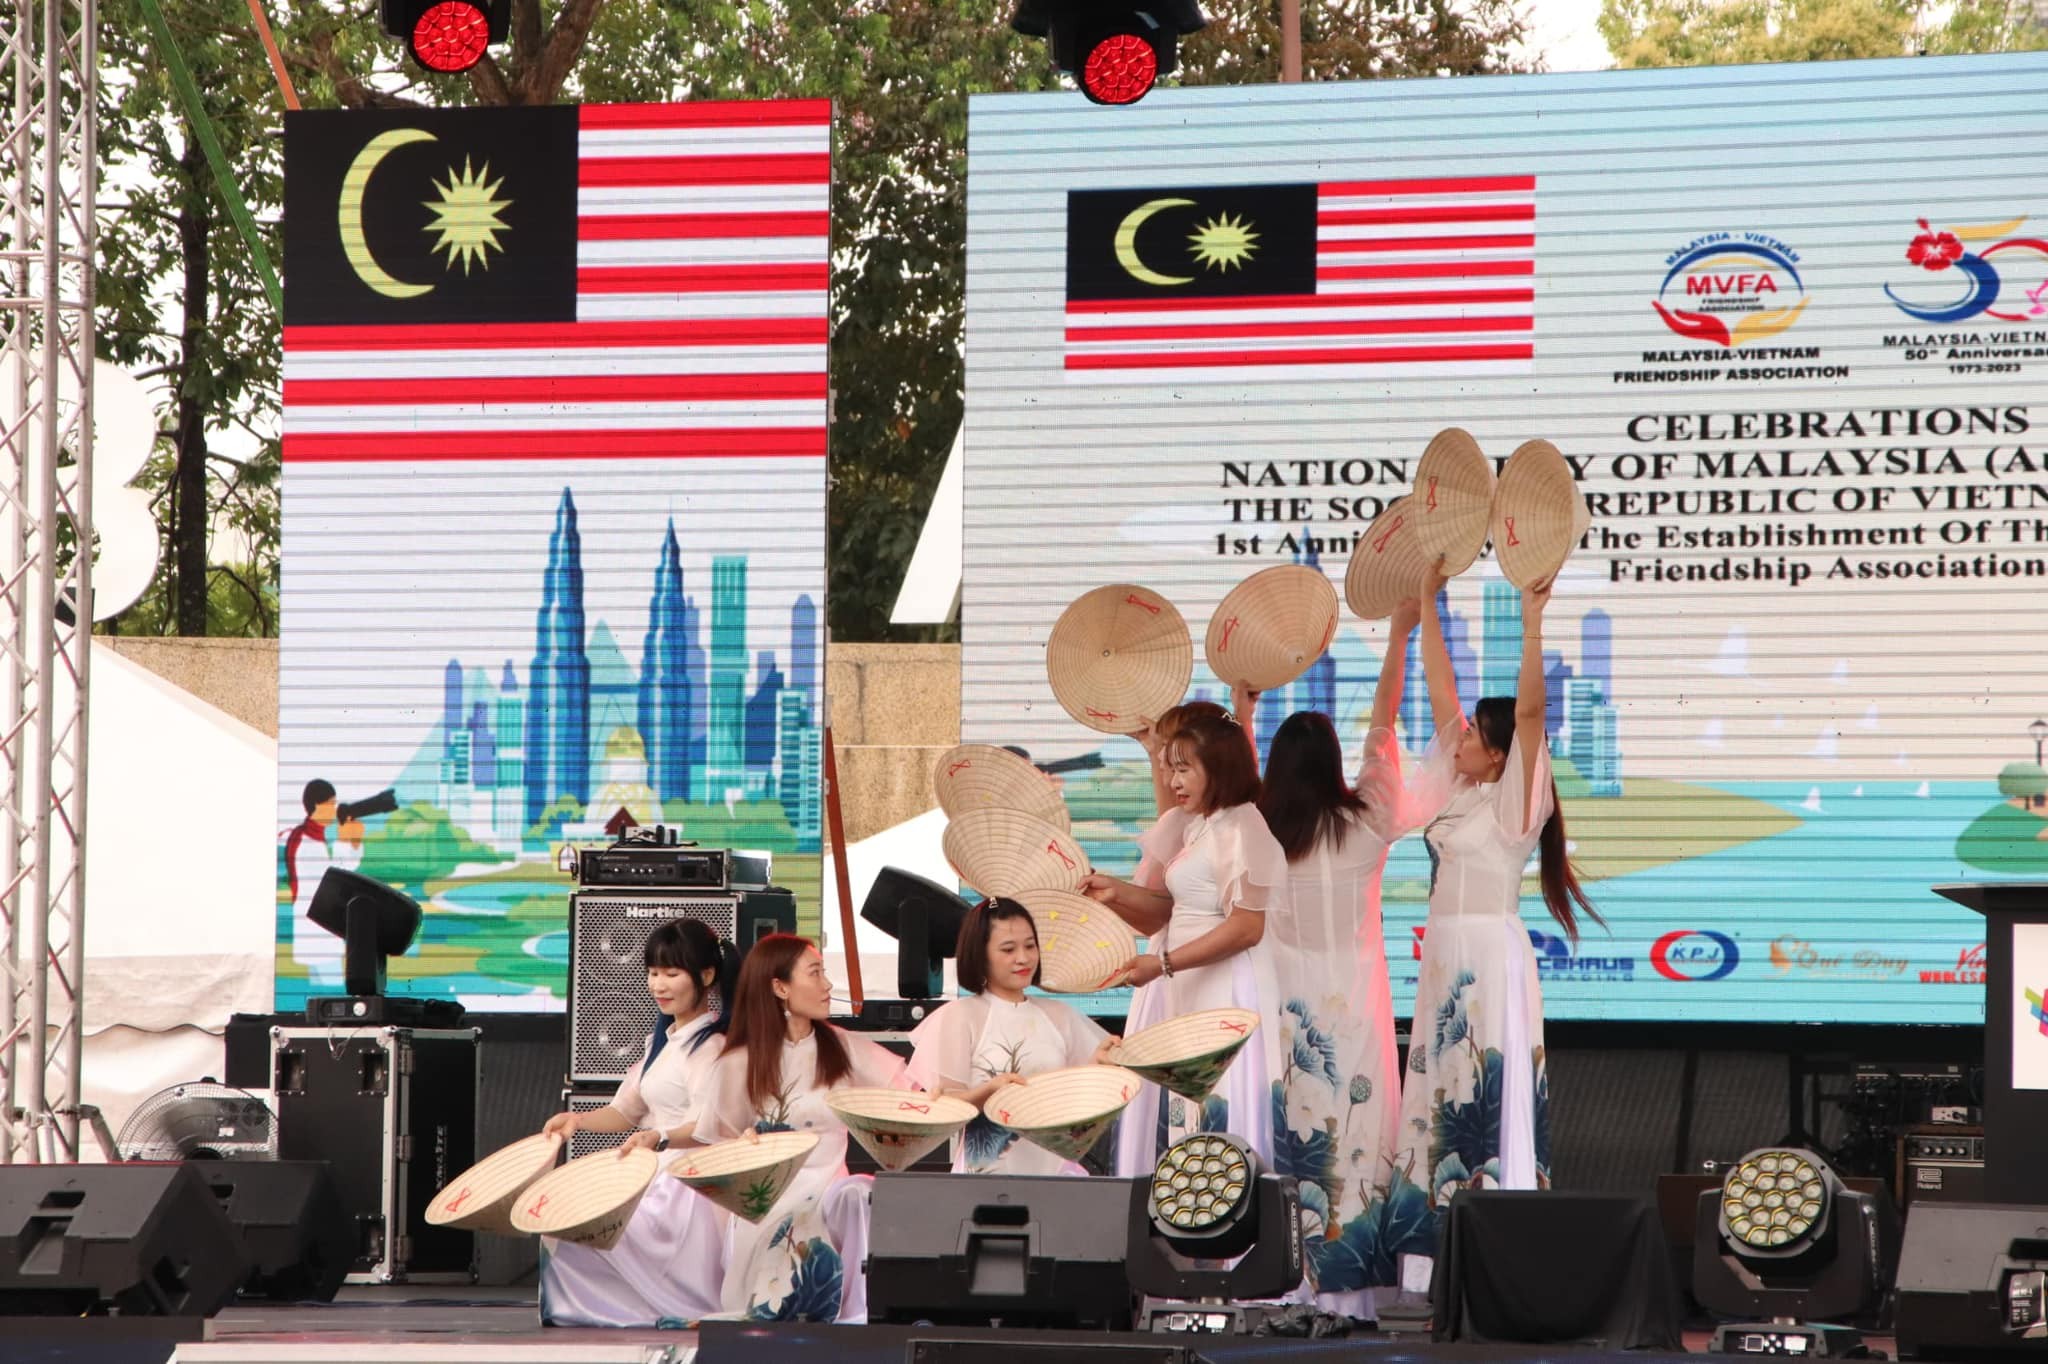 Tiết mục múa của các thành viên Hiệp hội Hữu nghị Malaysia-Việt Nam.